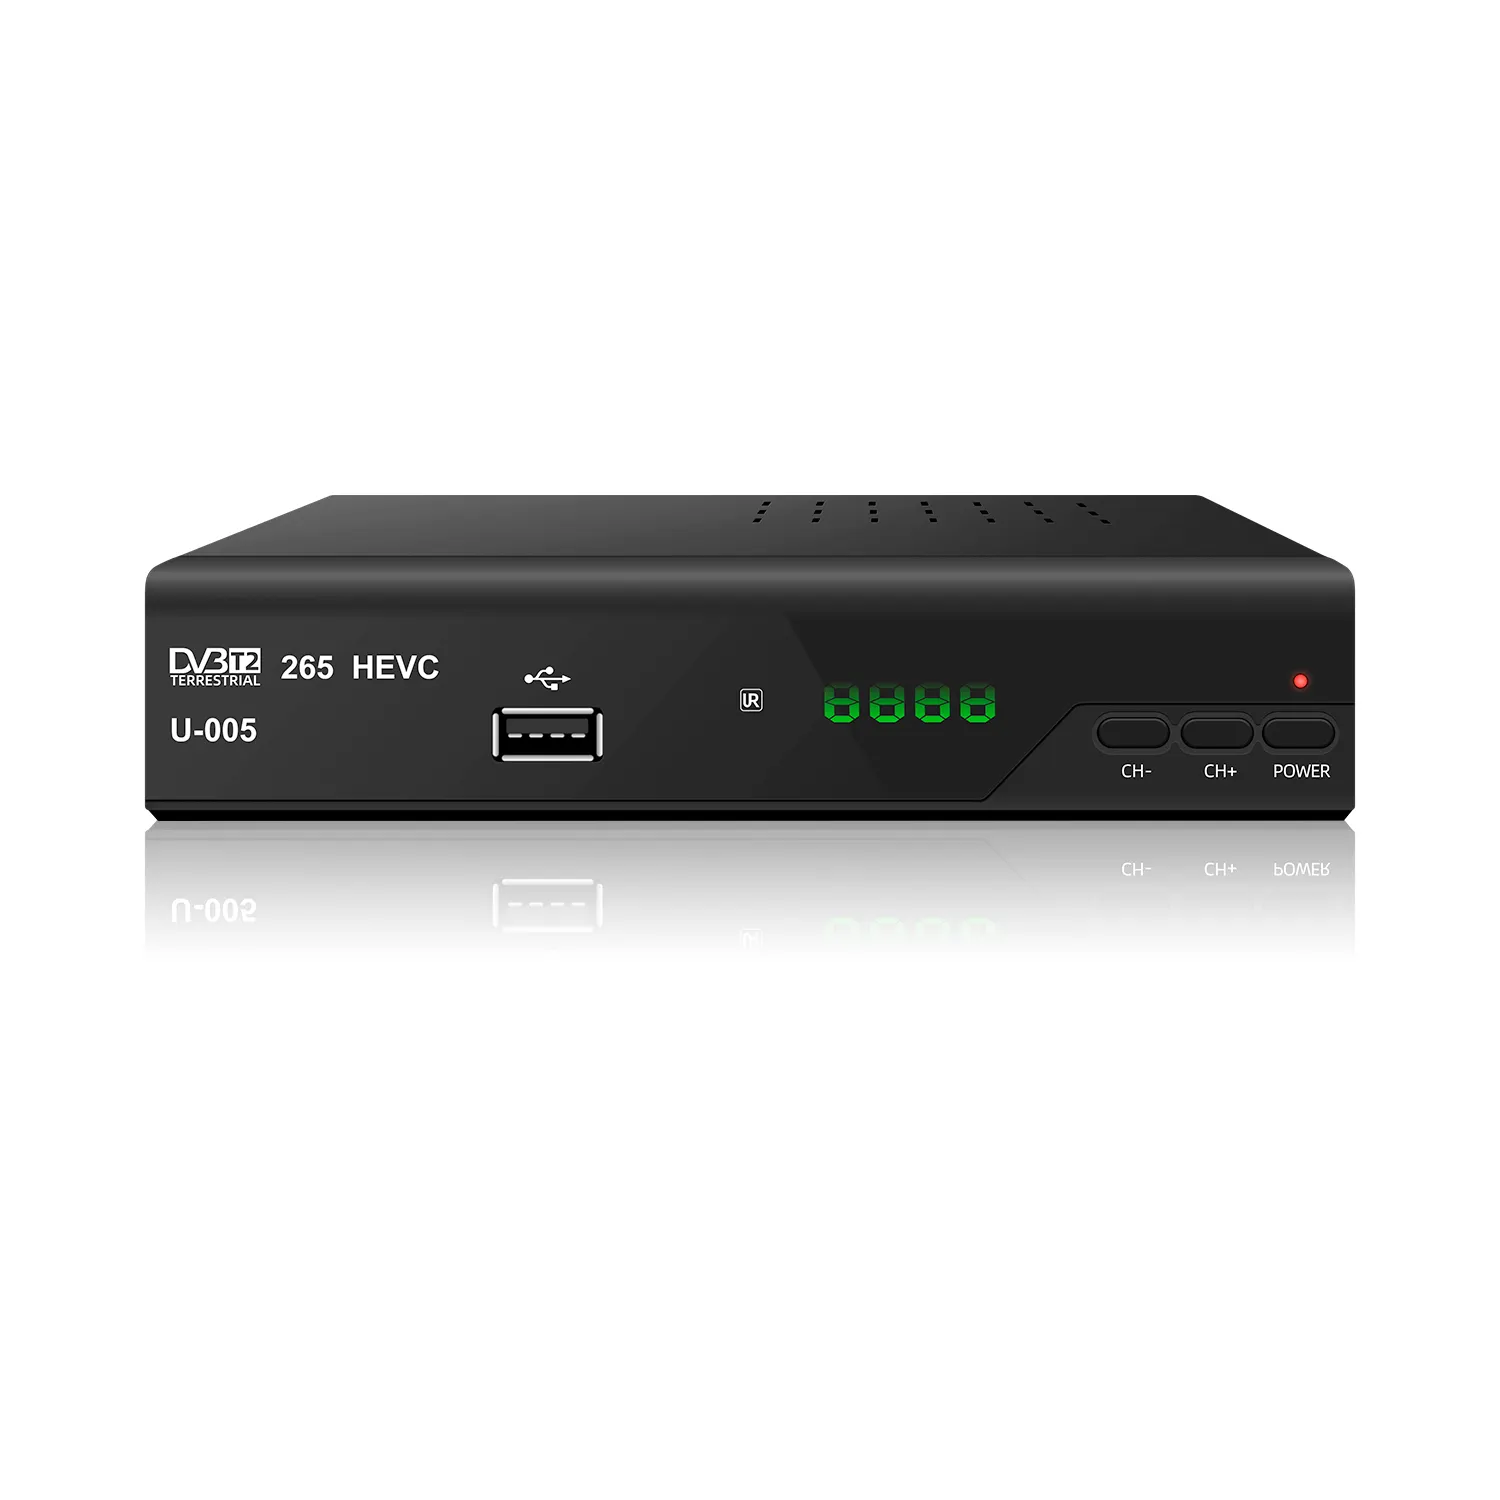 एफटीए hd 1080p DVB-T2 सेट टॉप बॉक्स हवा करने के लिए स्वतंत्र मिनी टीवी चैनल डिकोडर समय शिफ्ट मीडिया प्लेयर dvb-t2